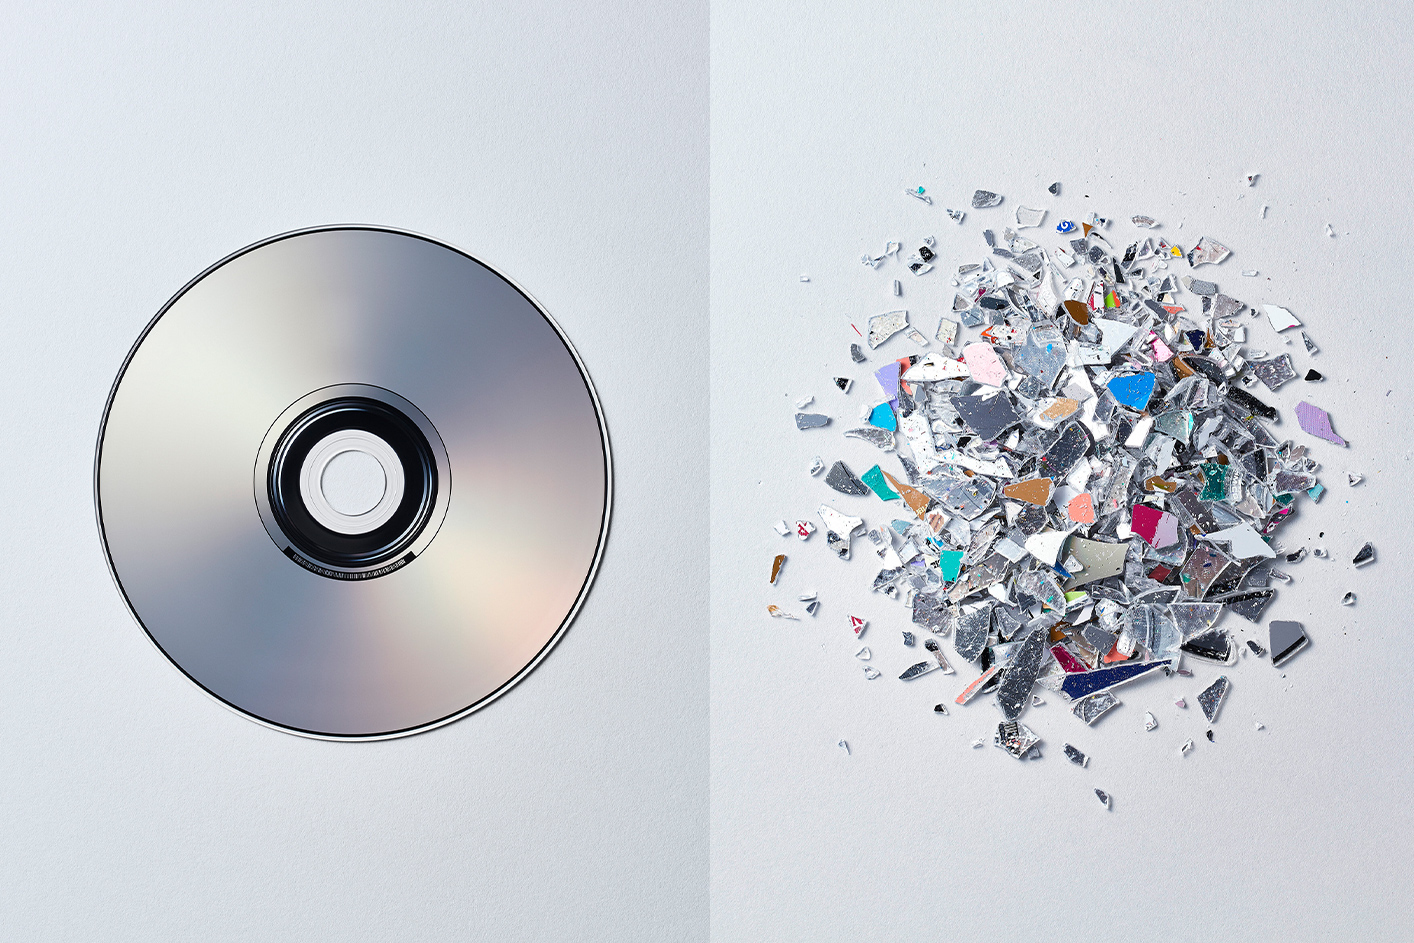 תמונה של דיסק משמאל כשהוא מחולק לחלקיקי פסולת גרוסים קטנים יותר מימין.